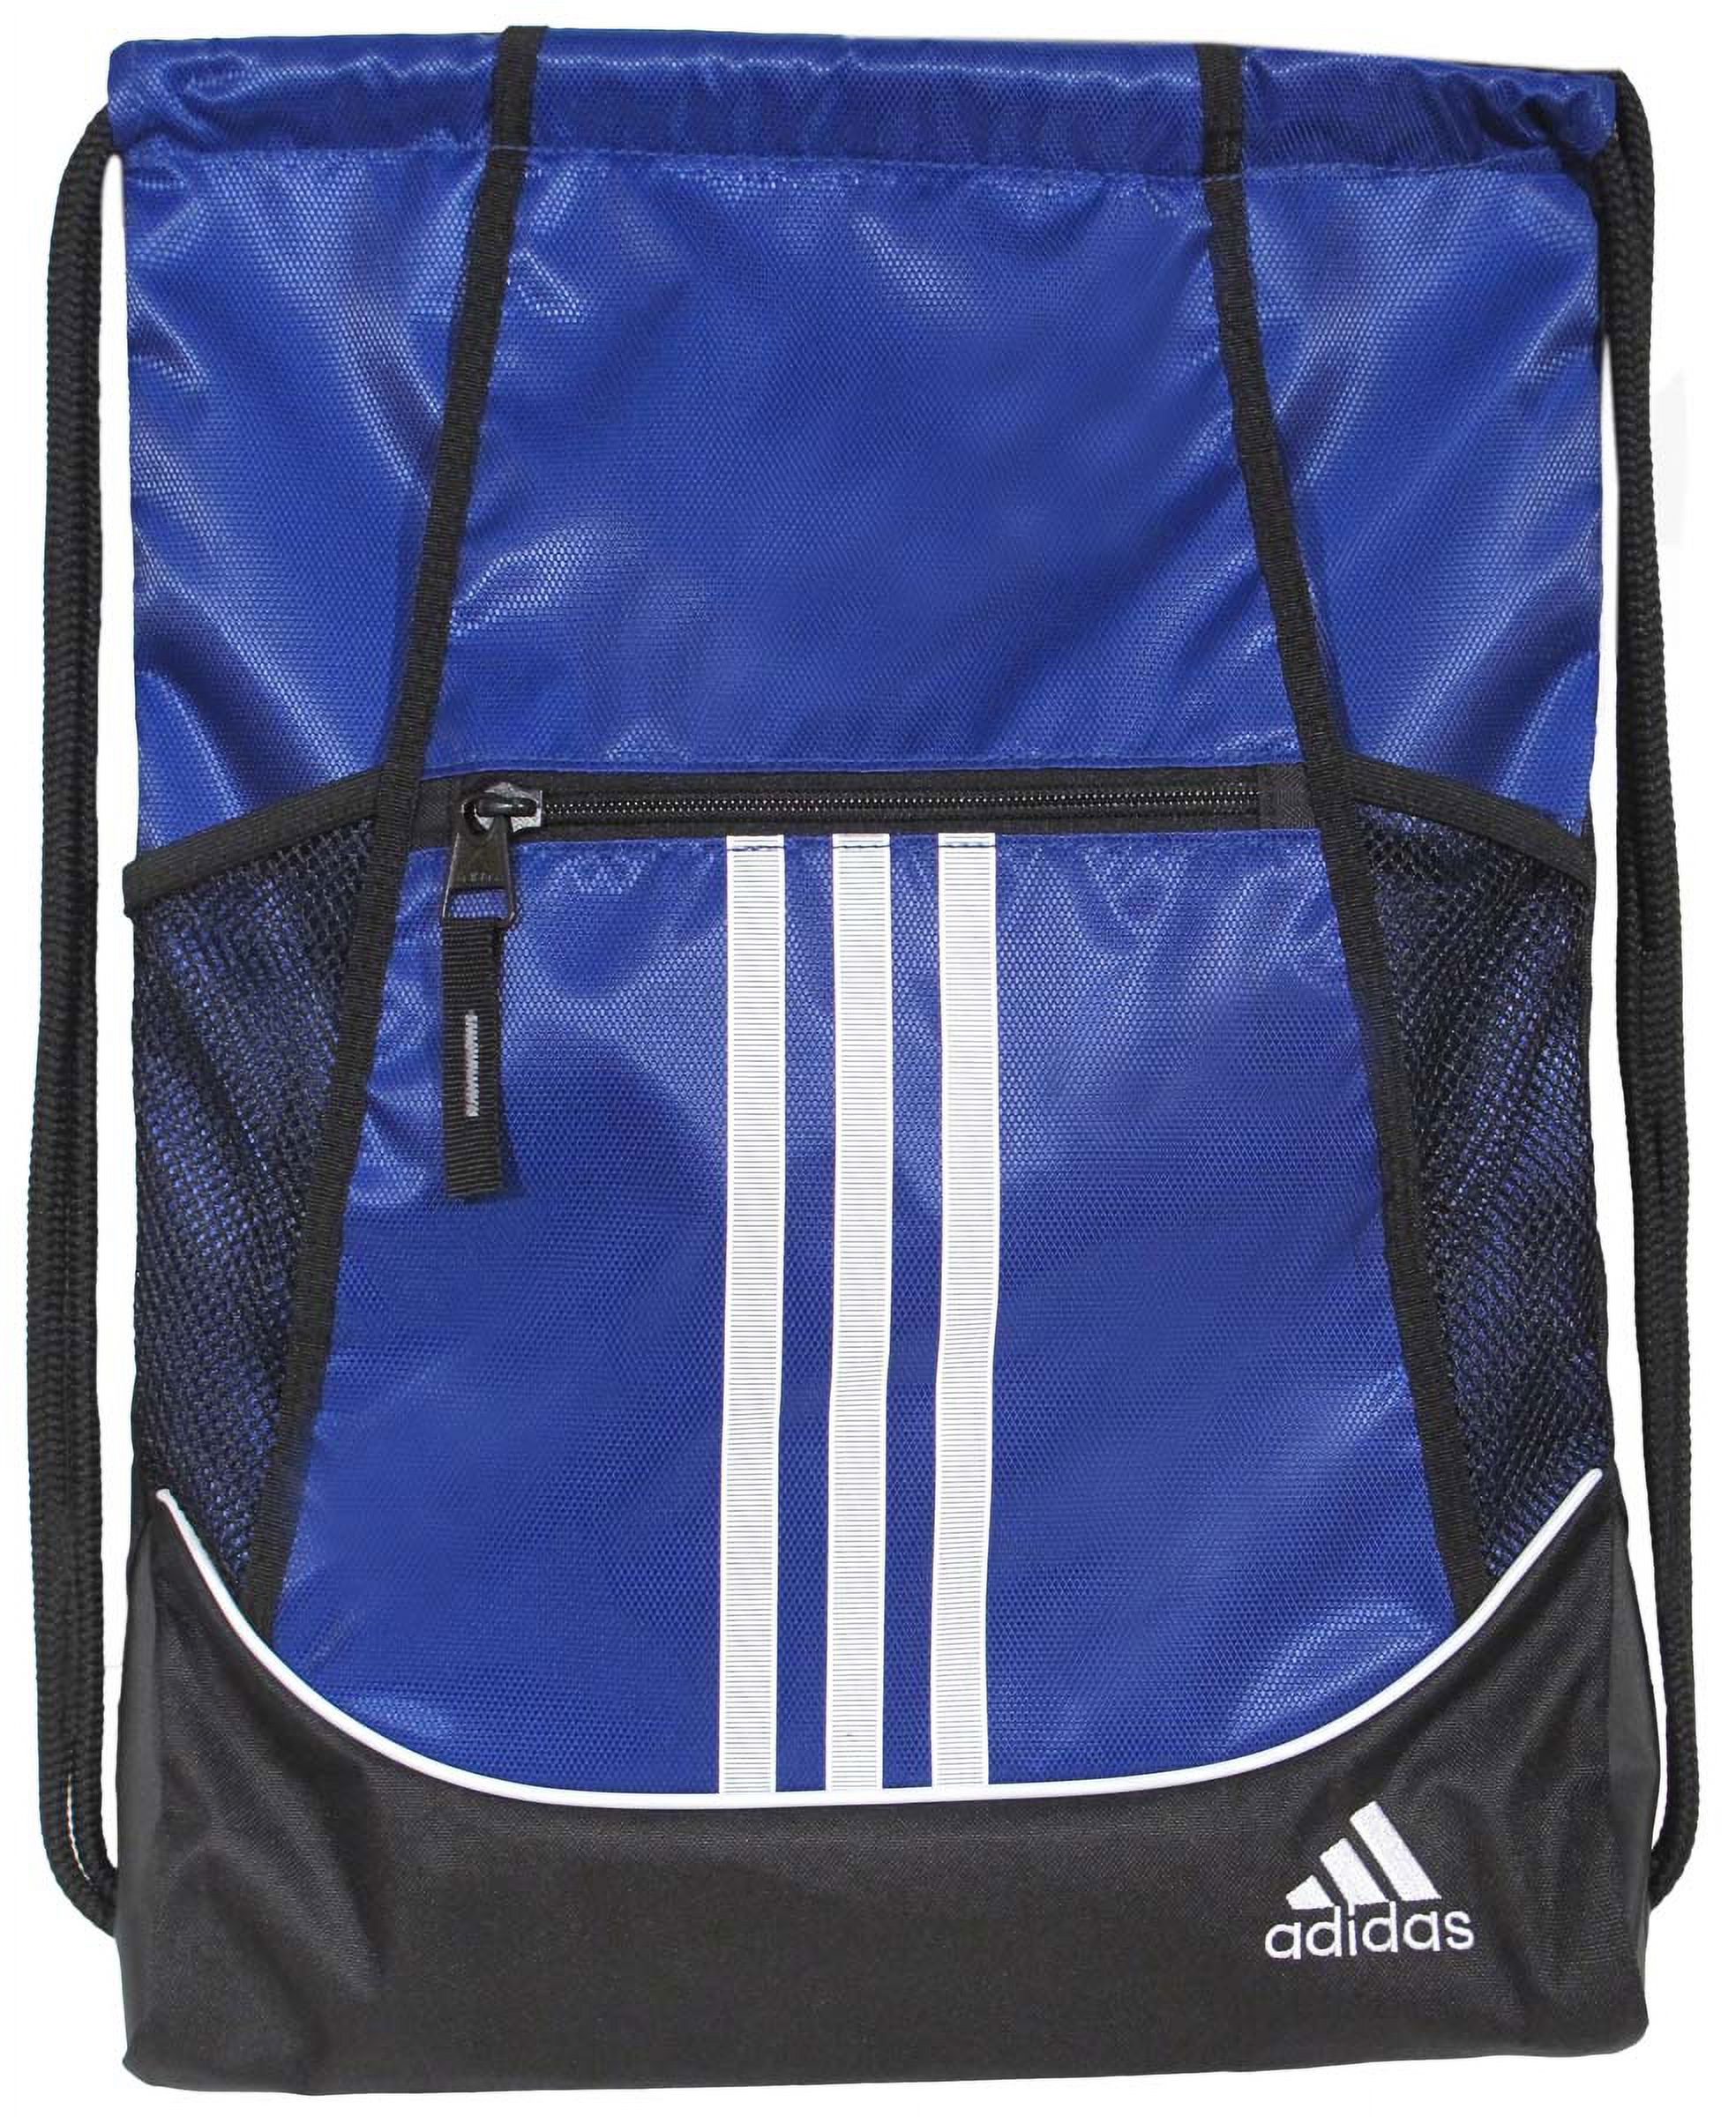 Adidas Alliance II Sackpack Blue - image 2 of 2